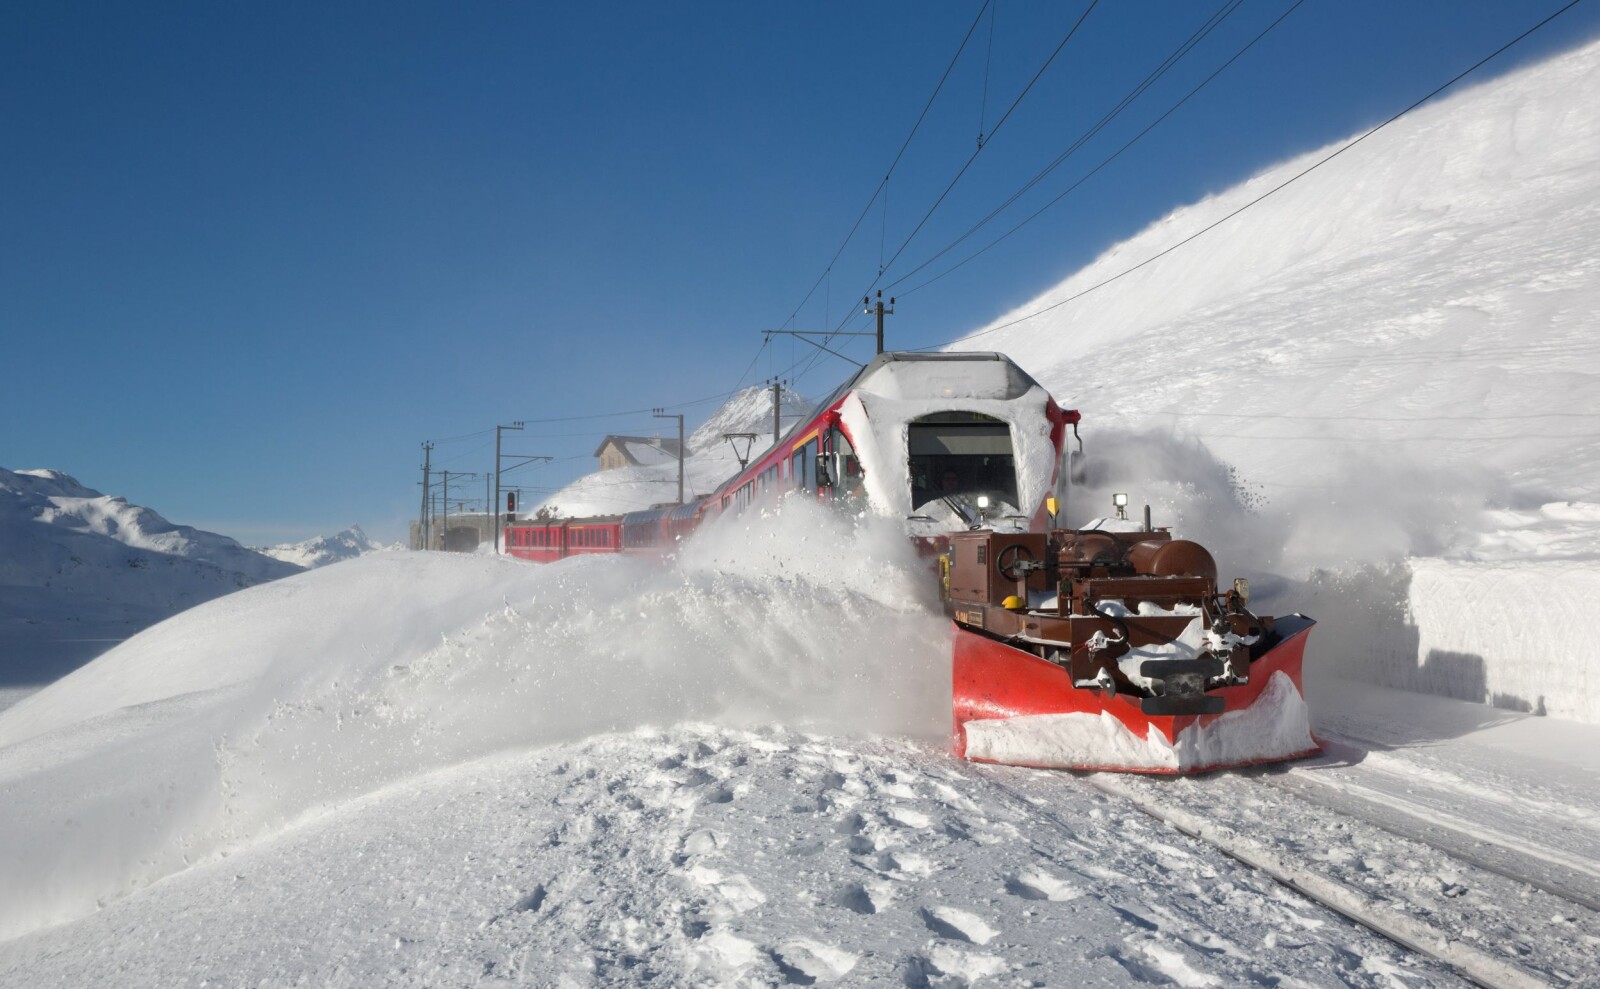 <b>I HØYDEN:</b> Det kreves sitt av både mann og maskin når snøen kommer for fullt på 2200 meters høyde ved Ospizio Bernina. 